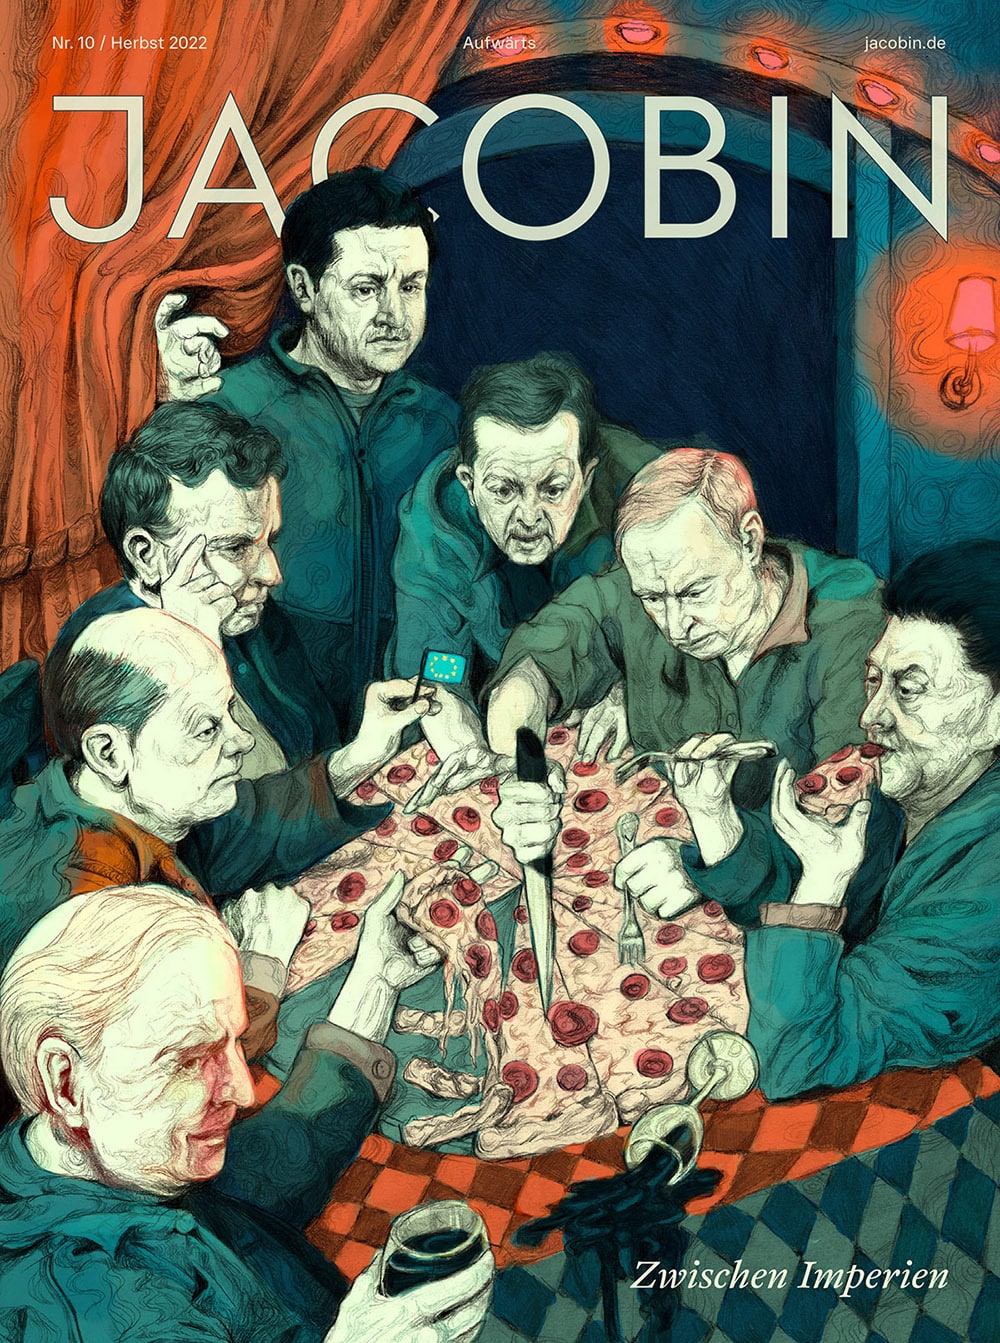 Titelillustration für das Jacobin-Magazin, auf dem 7 weiße Männer Salamipizza essen